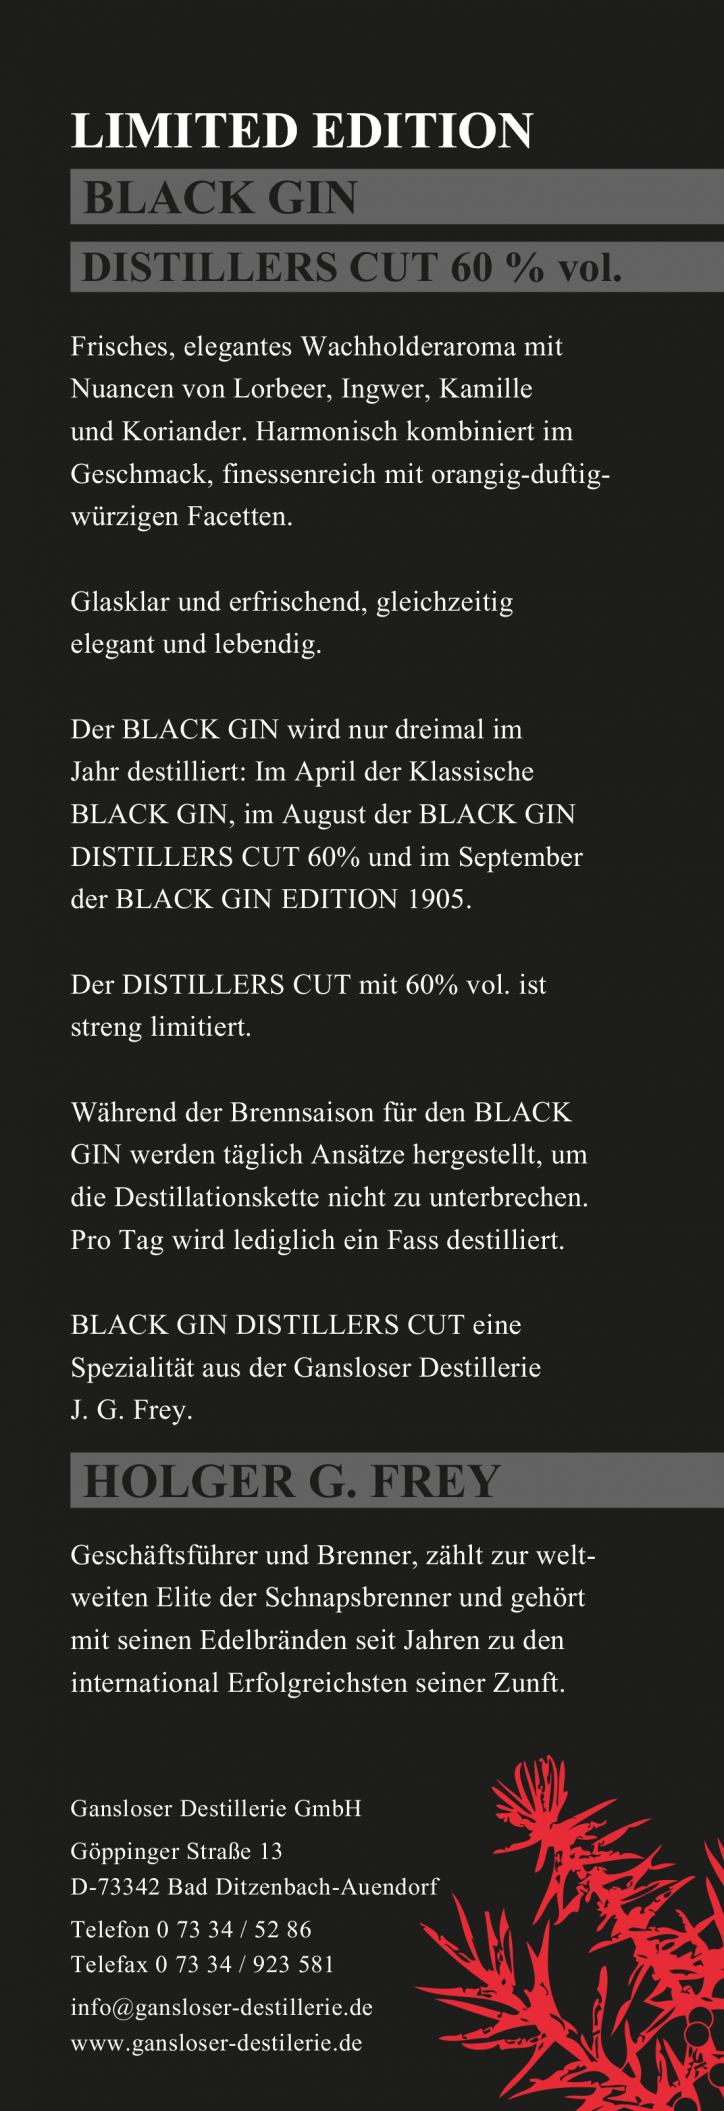 Rückseite der Produktkarte für Black Gin der Gansloser Destillerie GmbH